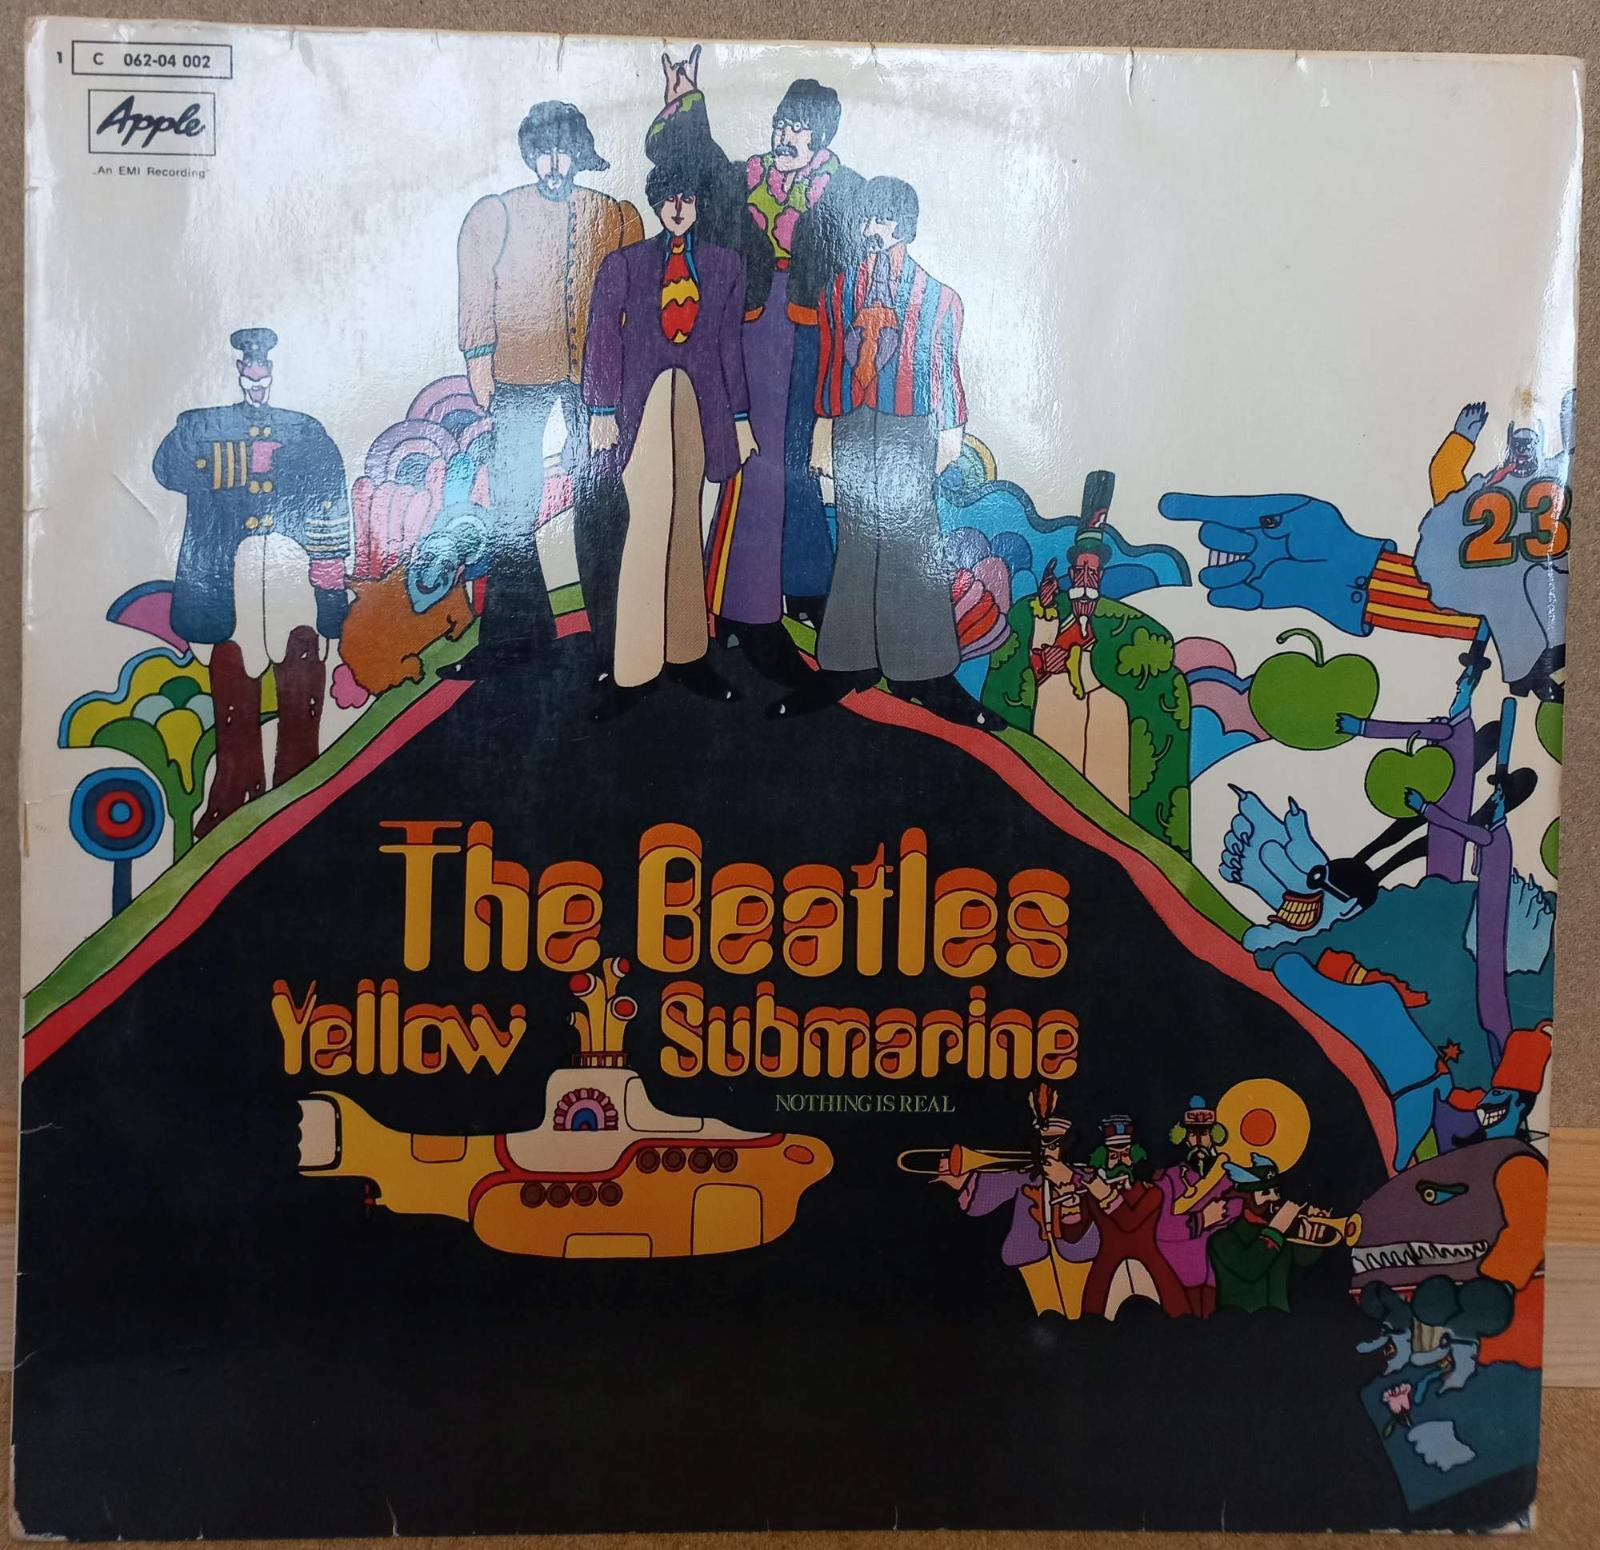 Lp The Beatles Yellow Submarine 1969 Aukro 5693